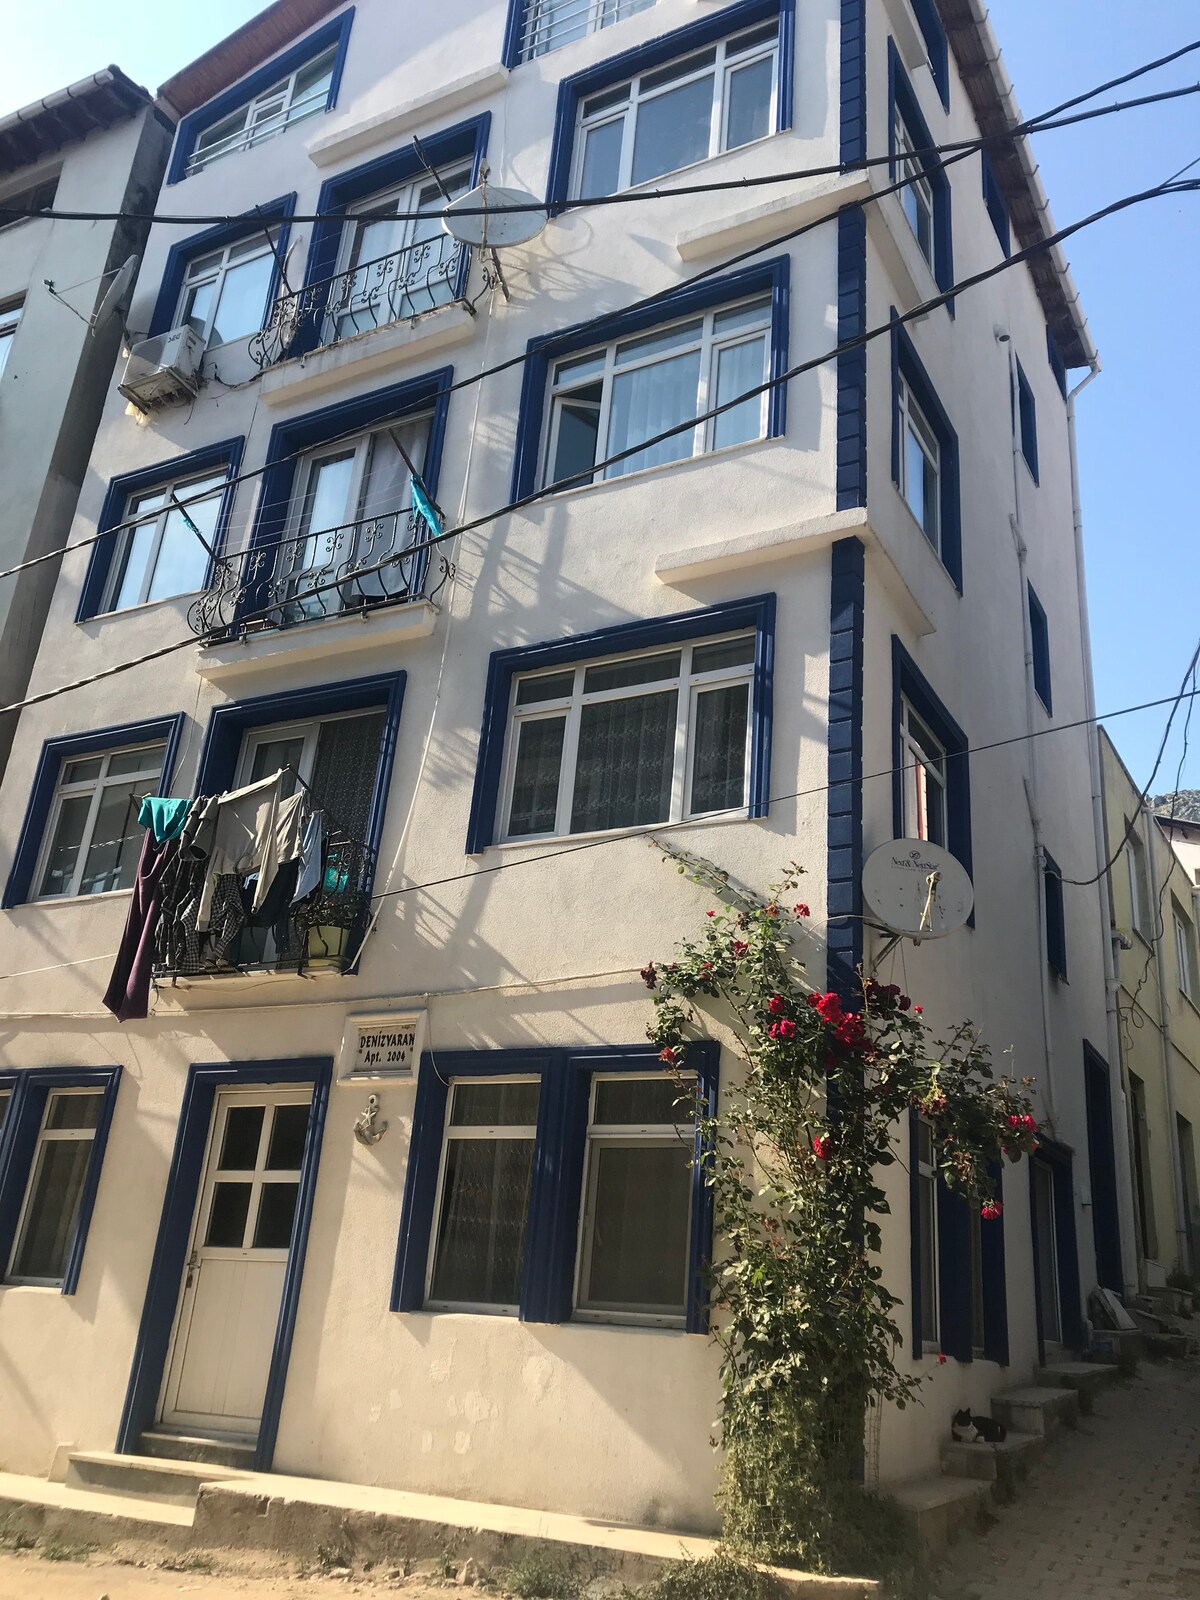 Denizyaran公寓入口（房子位于马尔马拉岛上）